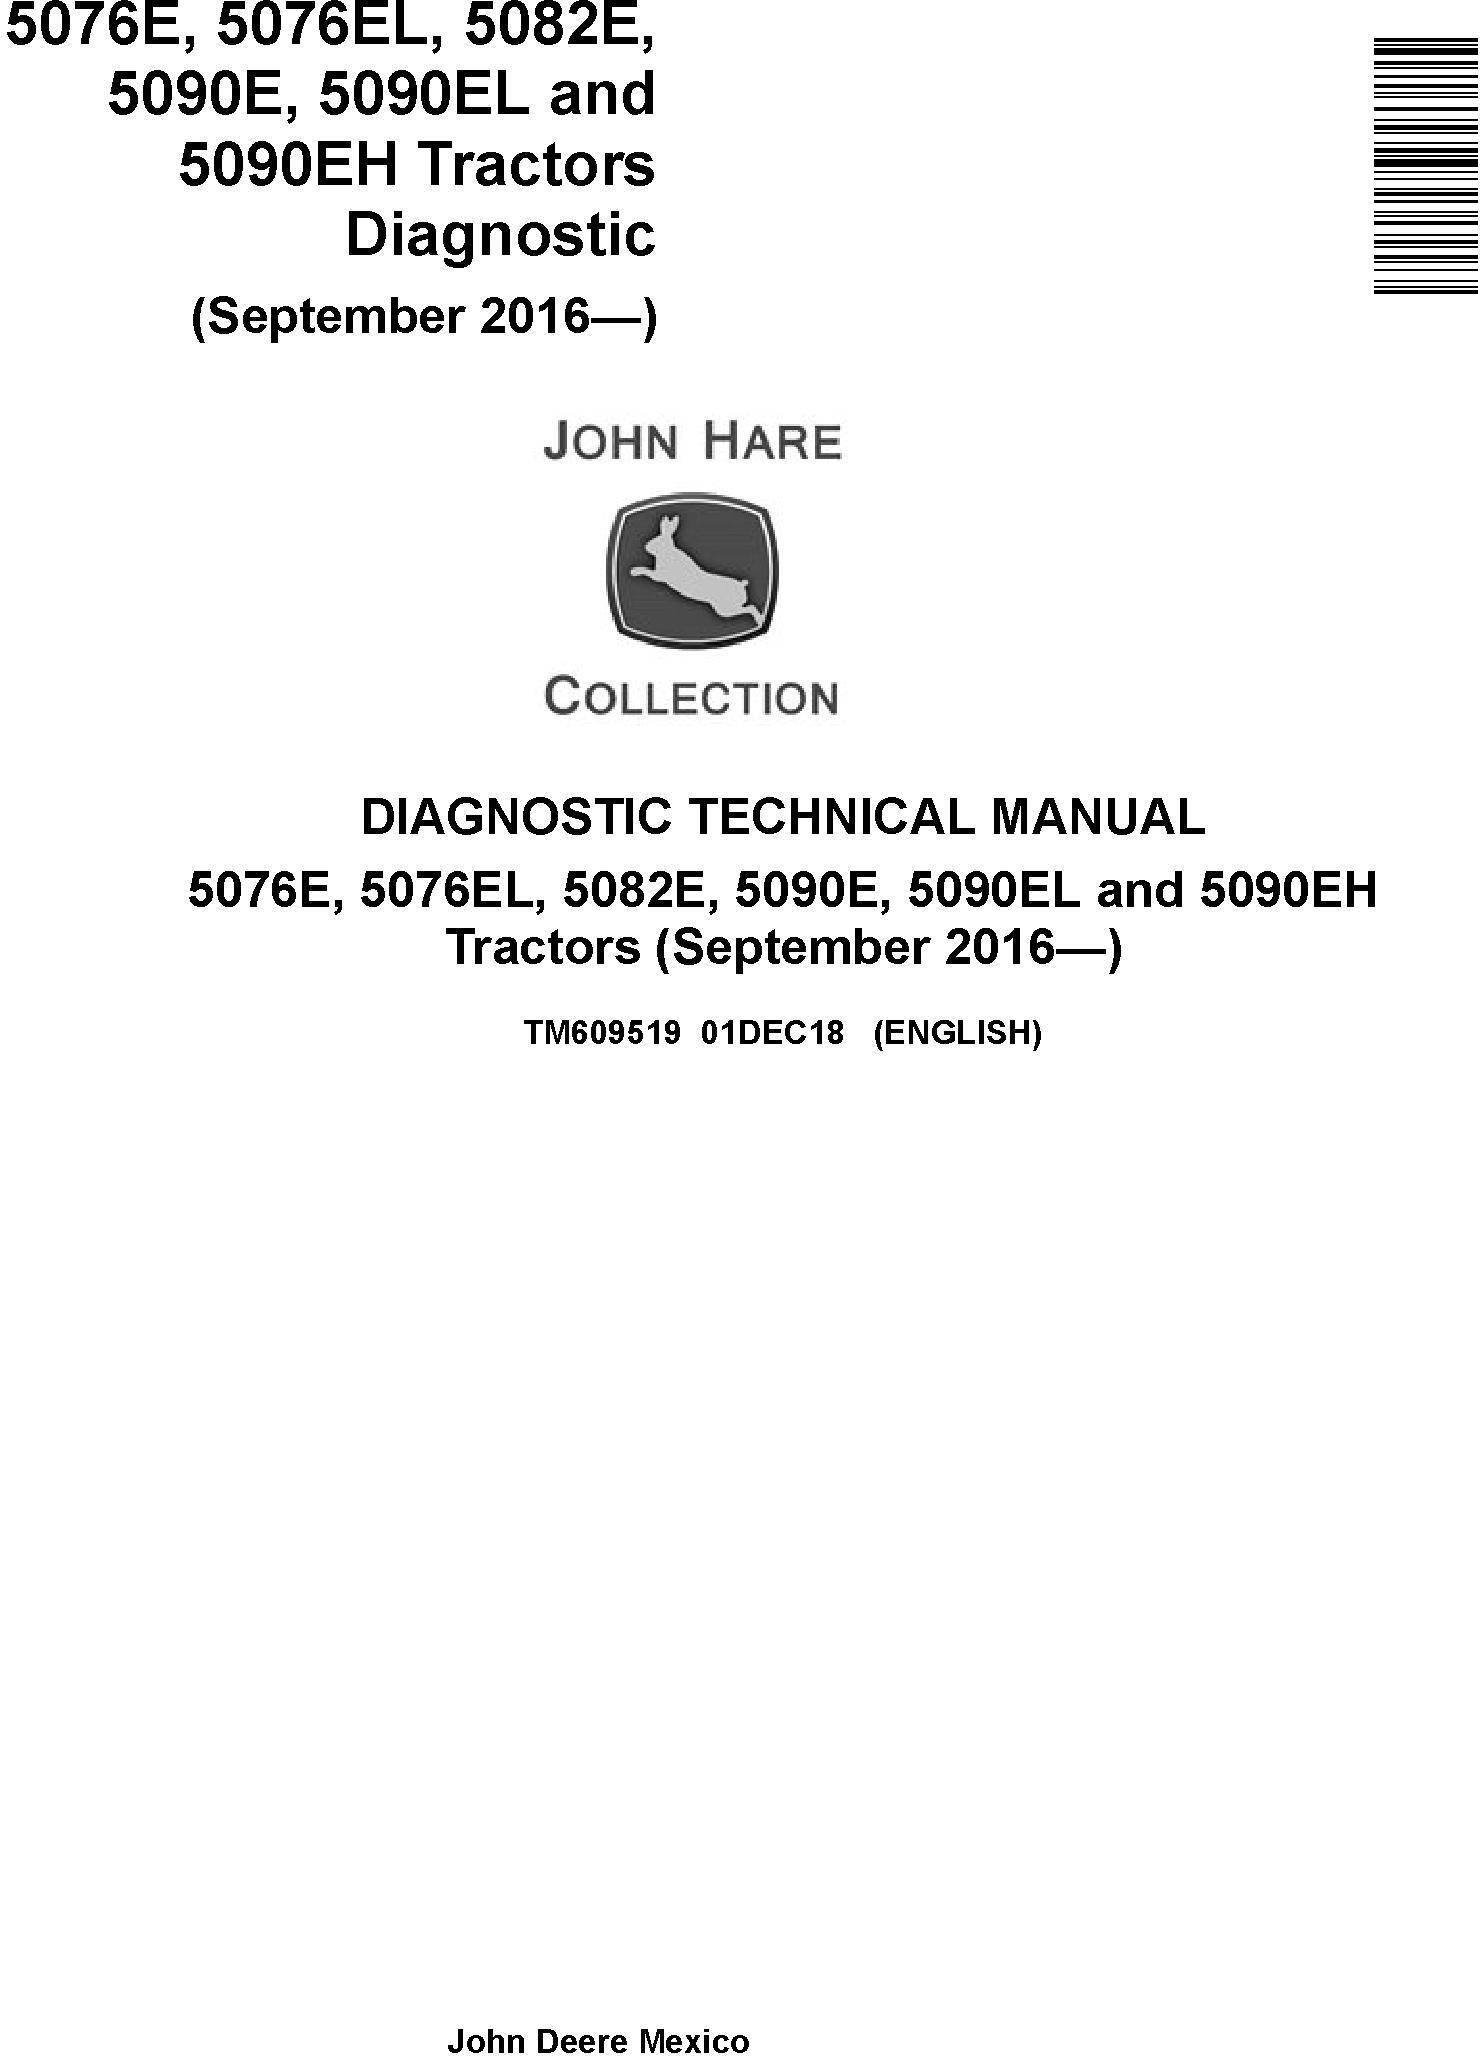 John Deere 5076E 5076EL 5082E 5090E 5090EL 5090EH Tractor Diagnostic Technical Manual TM609519